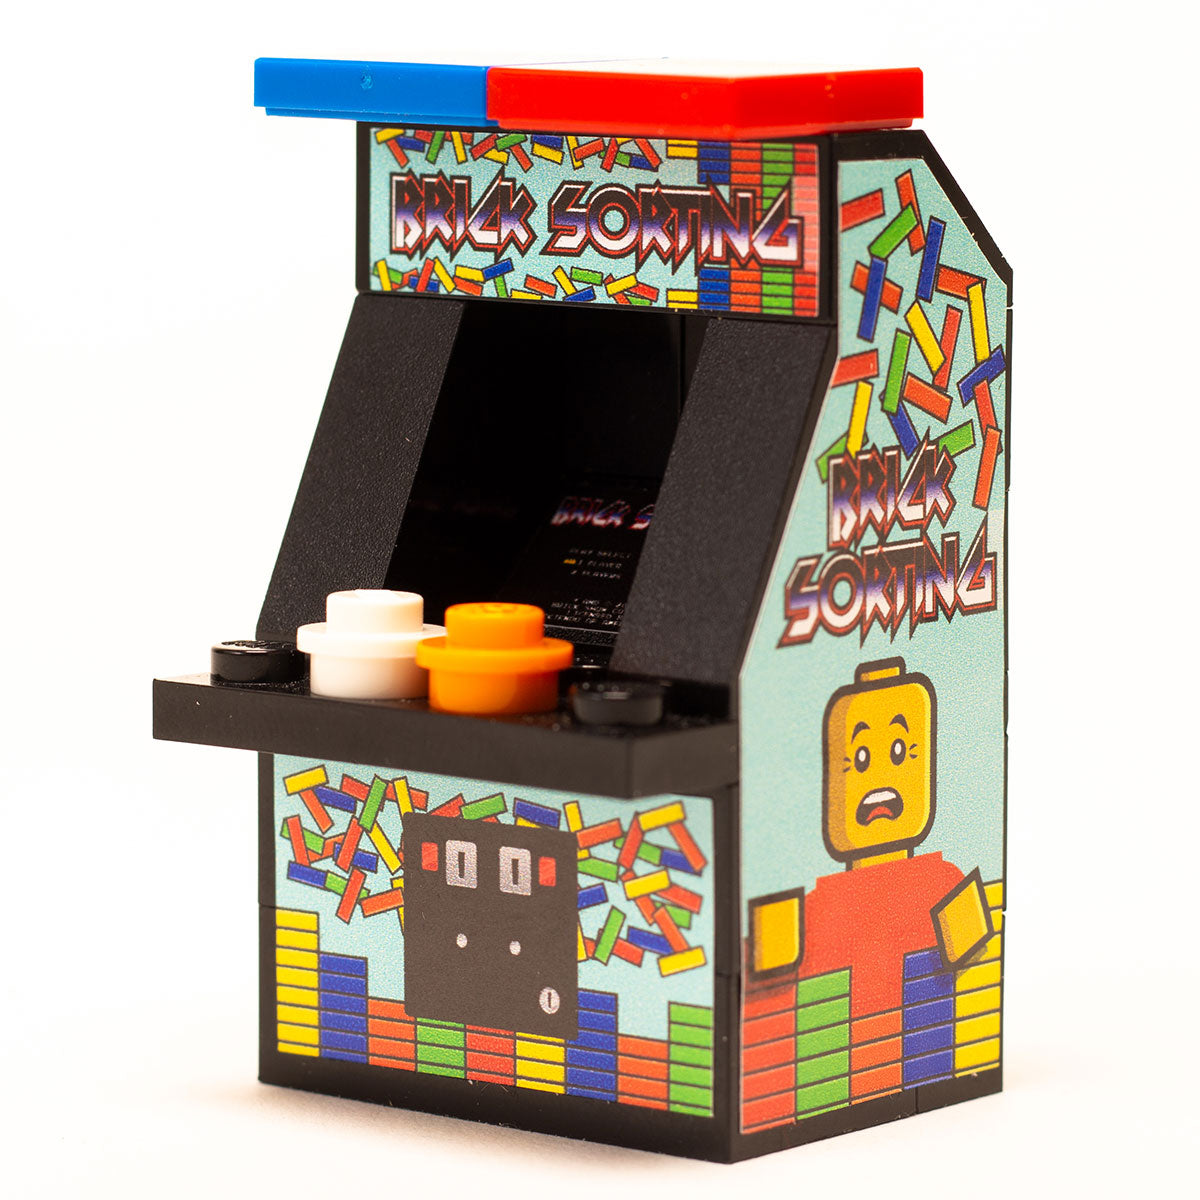 Brick Sorting - Custom Arcade Machine